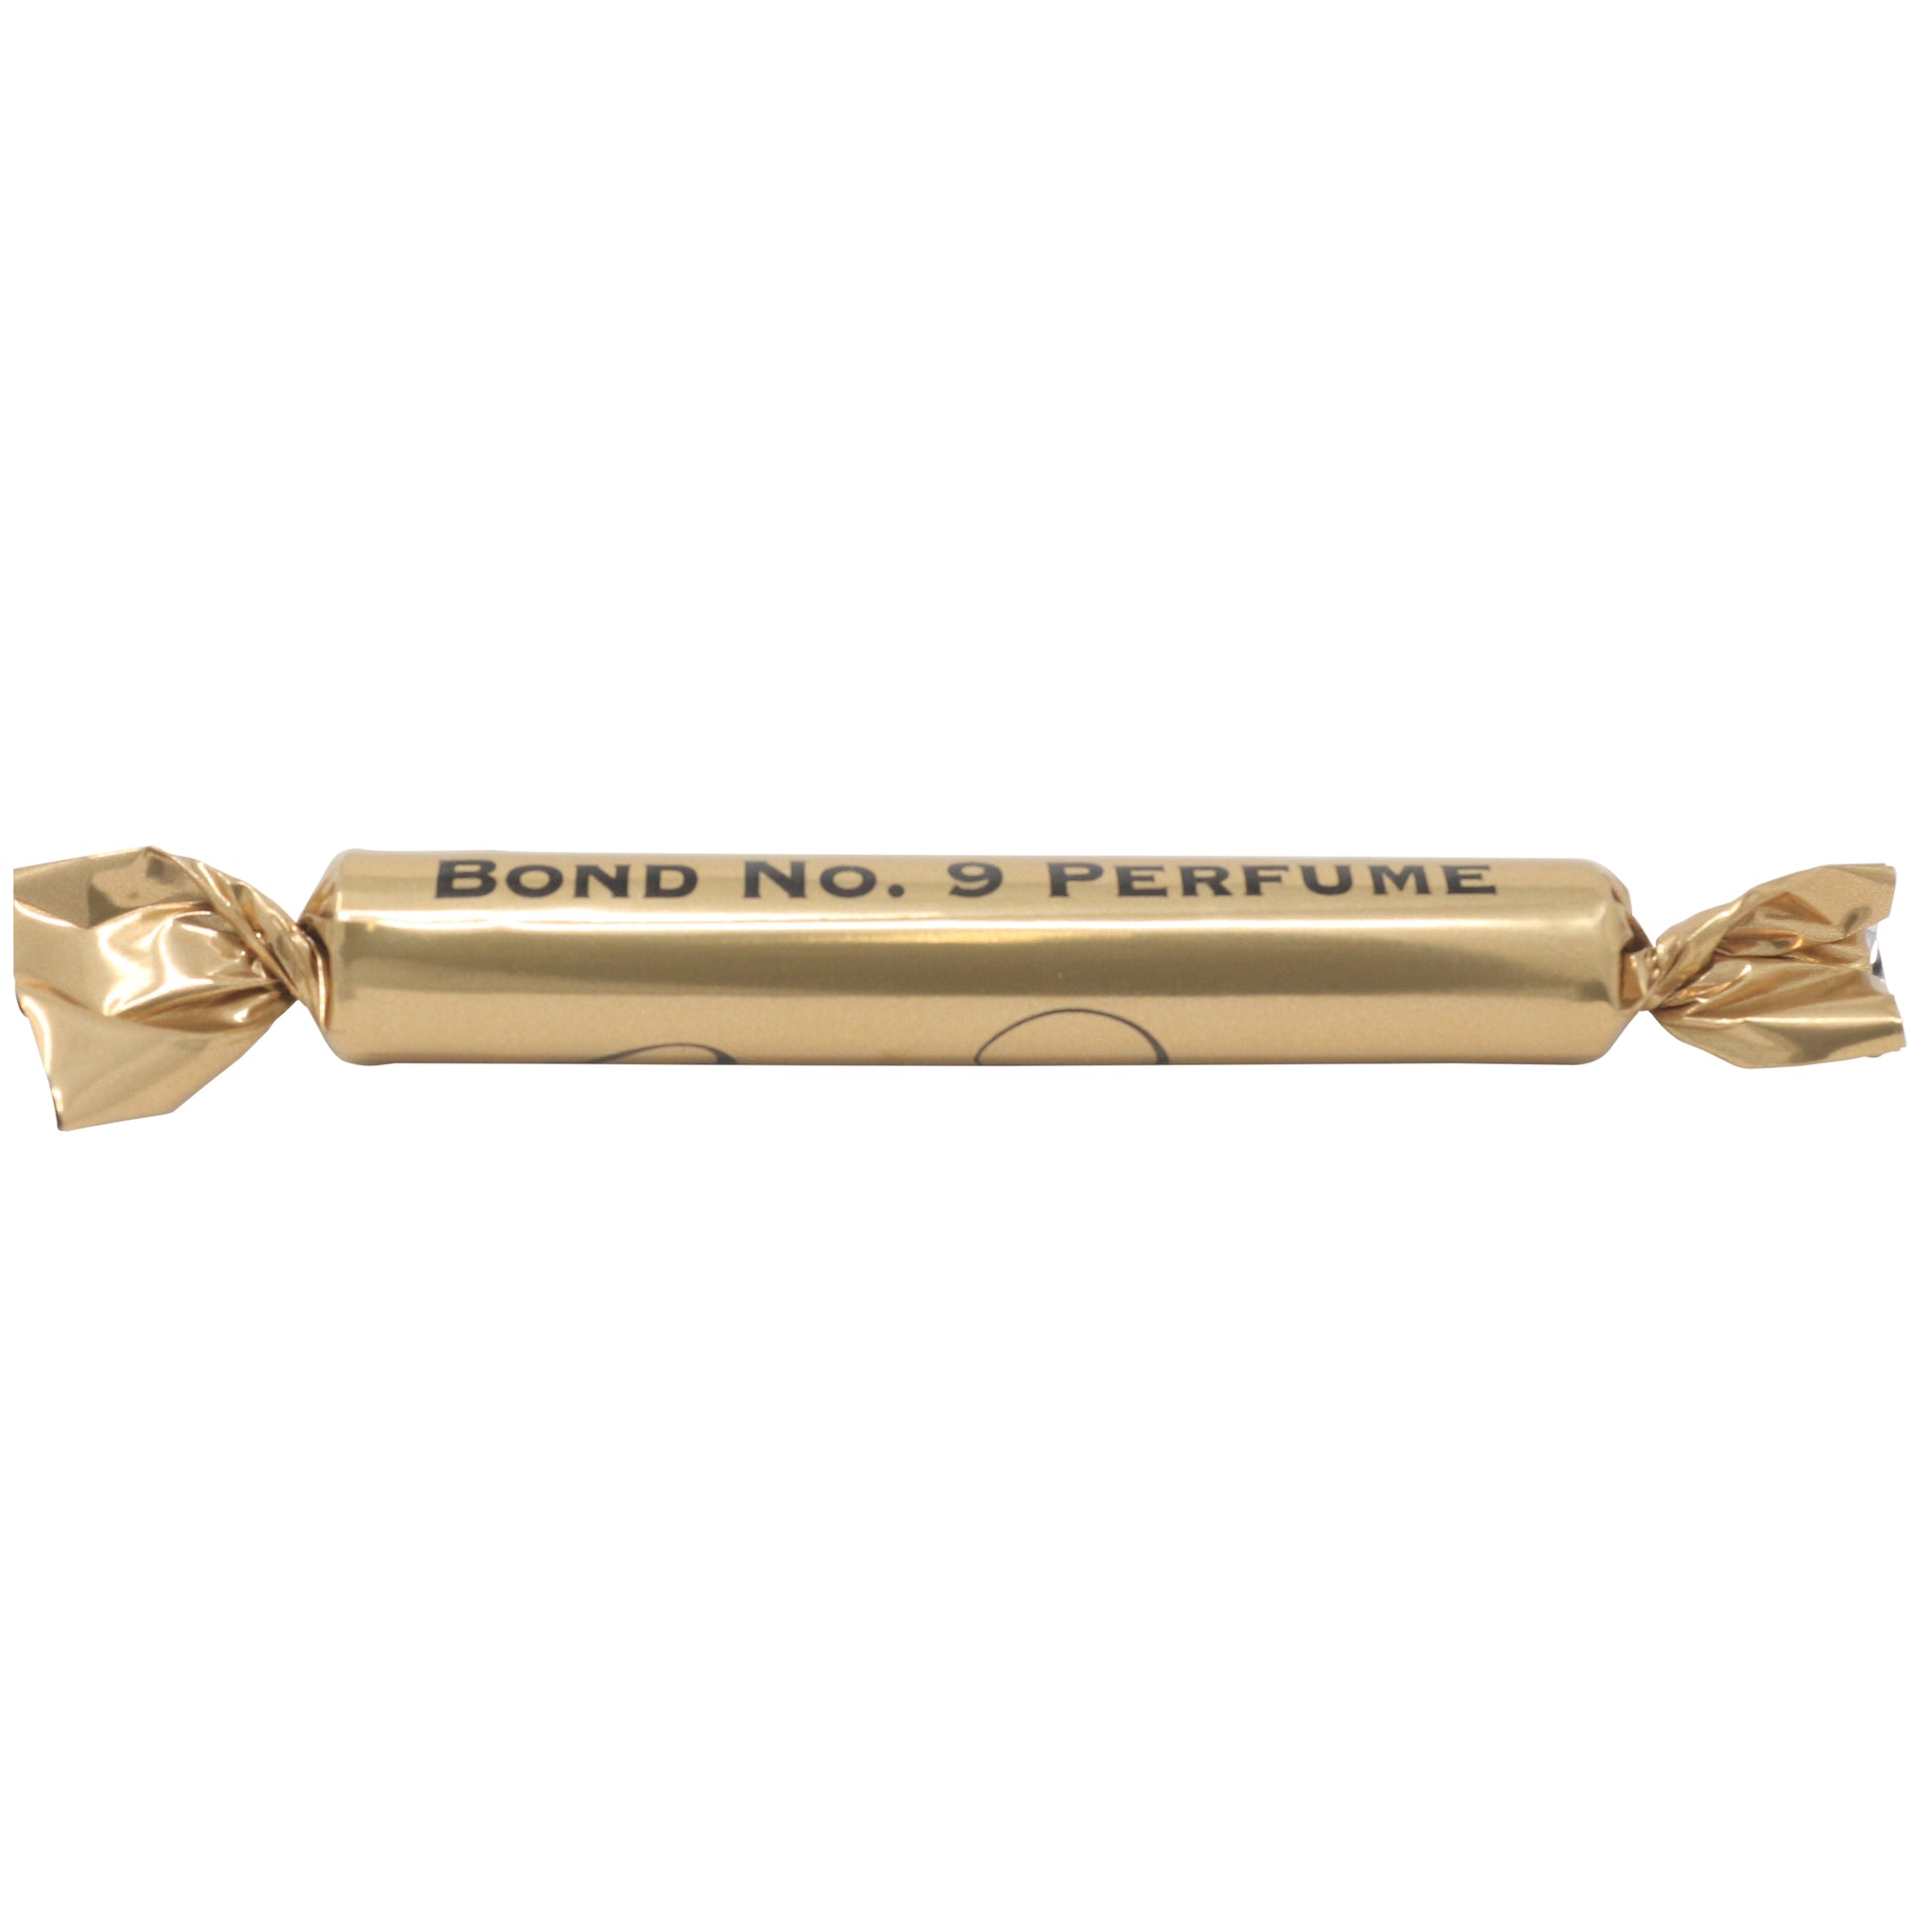 Bond No. 9 Bond No. 9 Parfüm 1.7 ml 0.054 Fl. Oz. hivatalos parfümminta